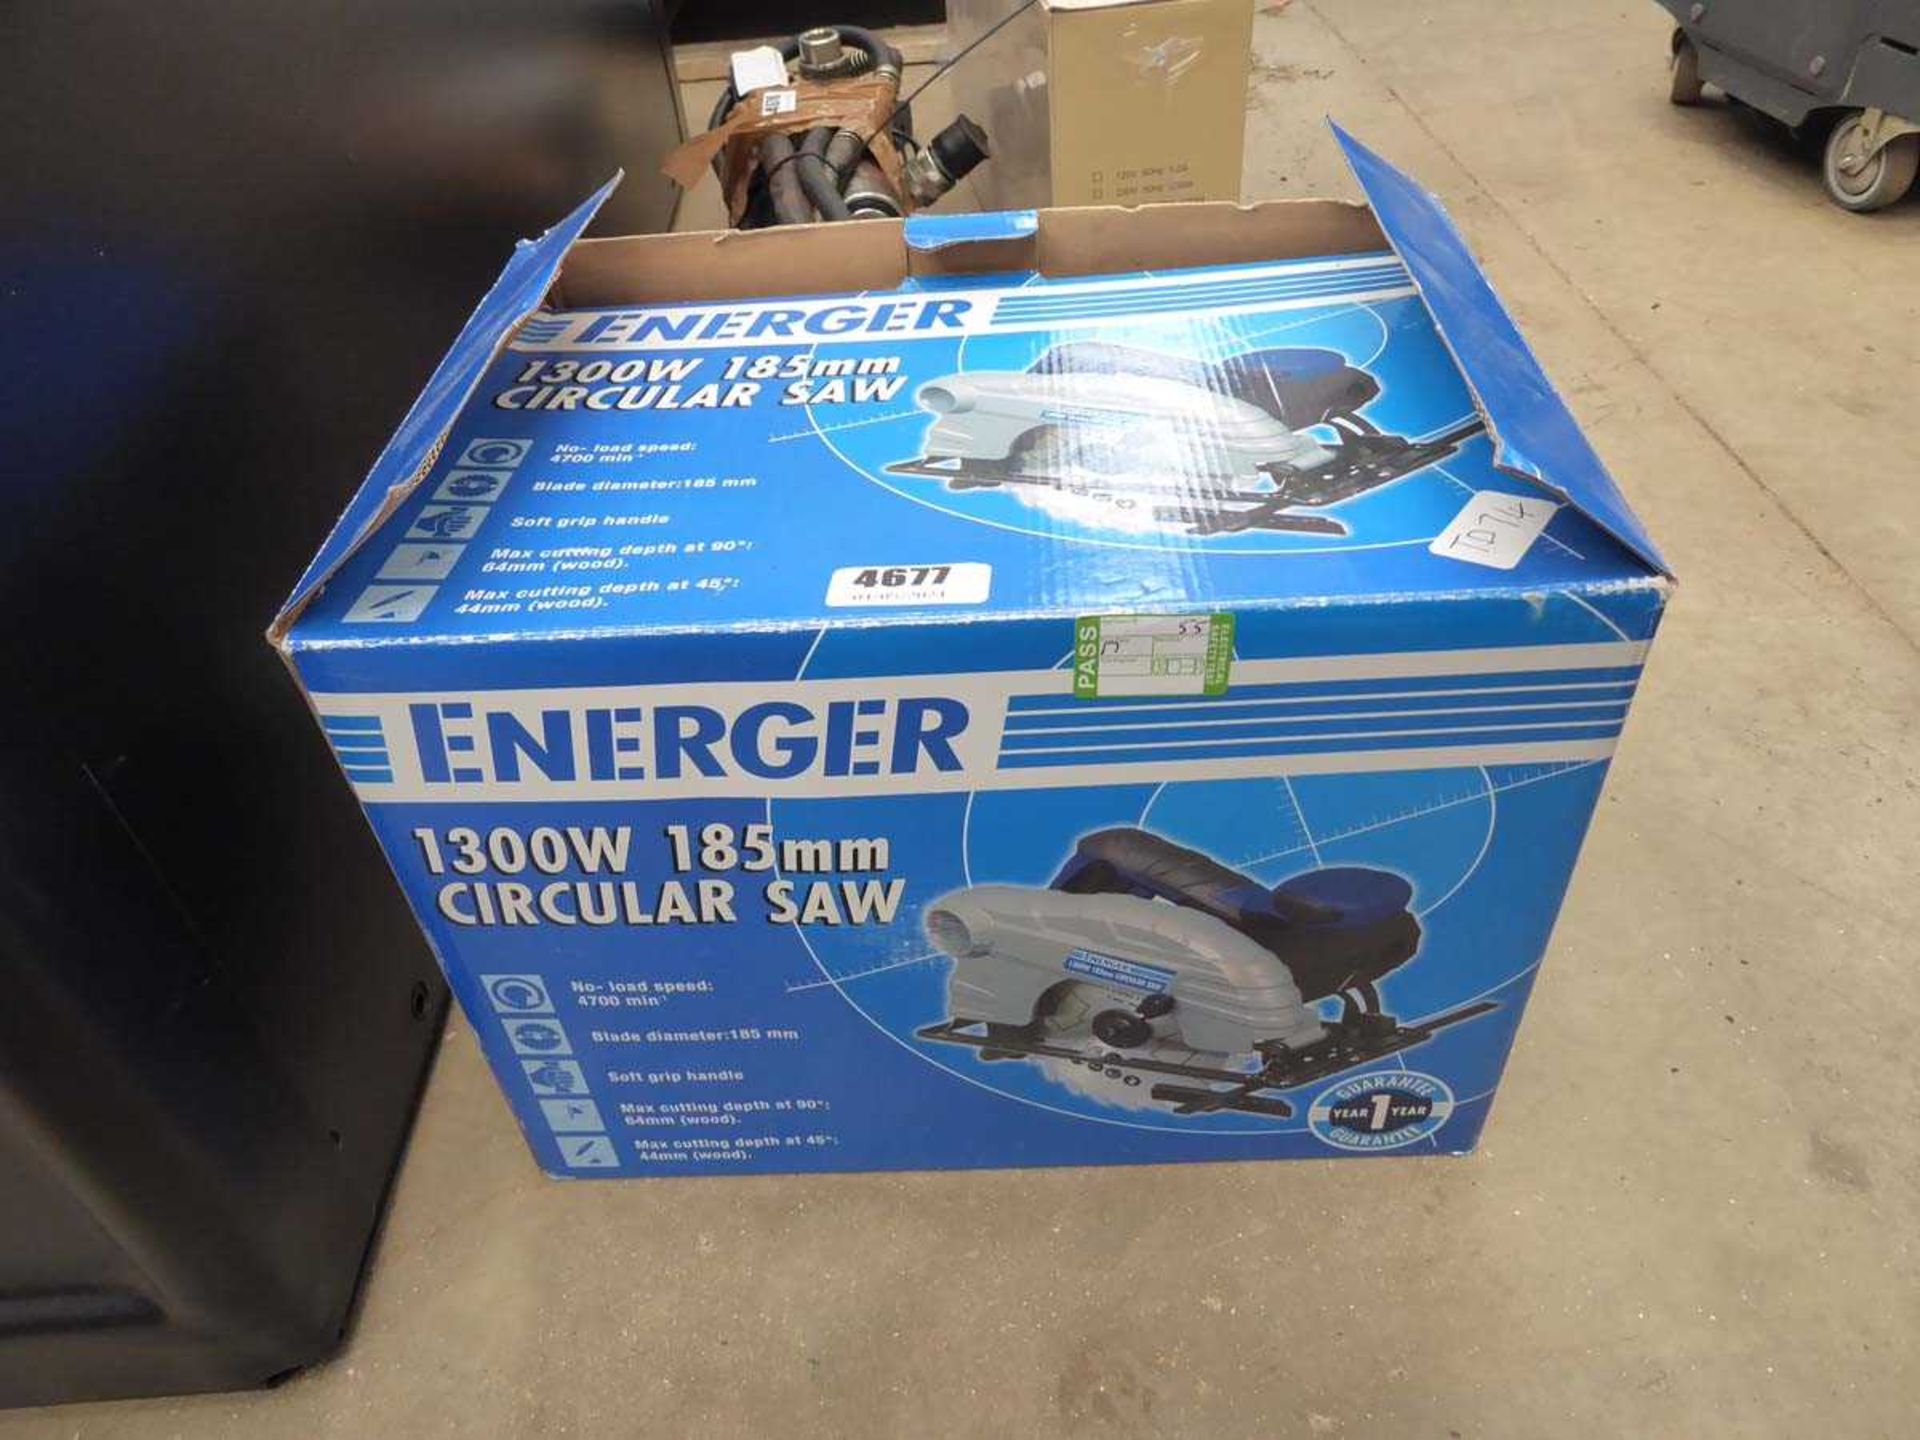 Energer circular saw